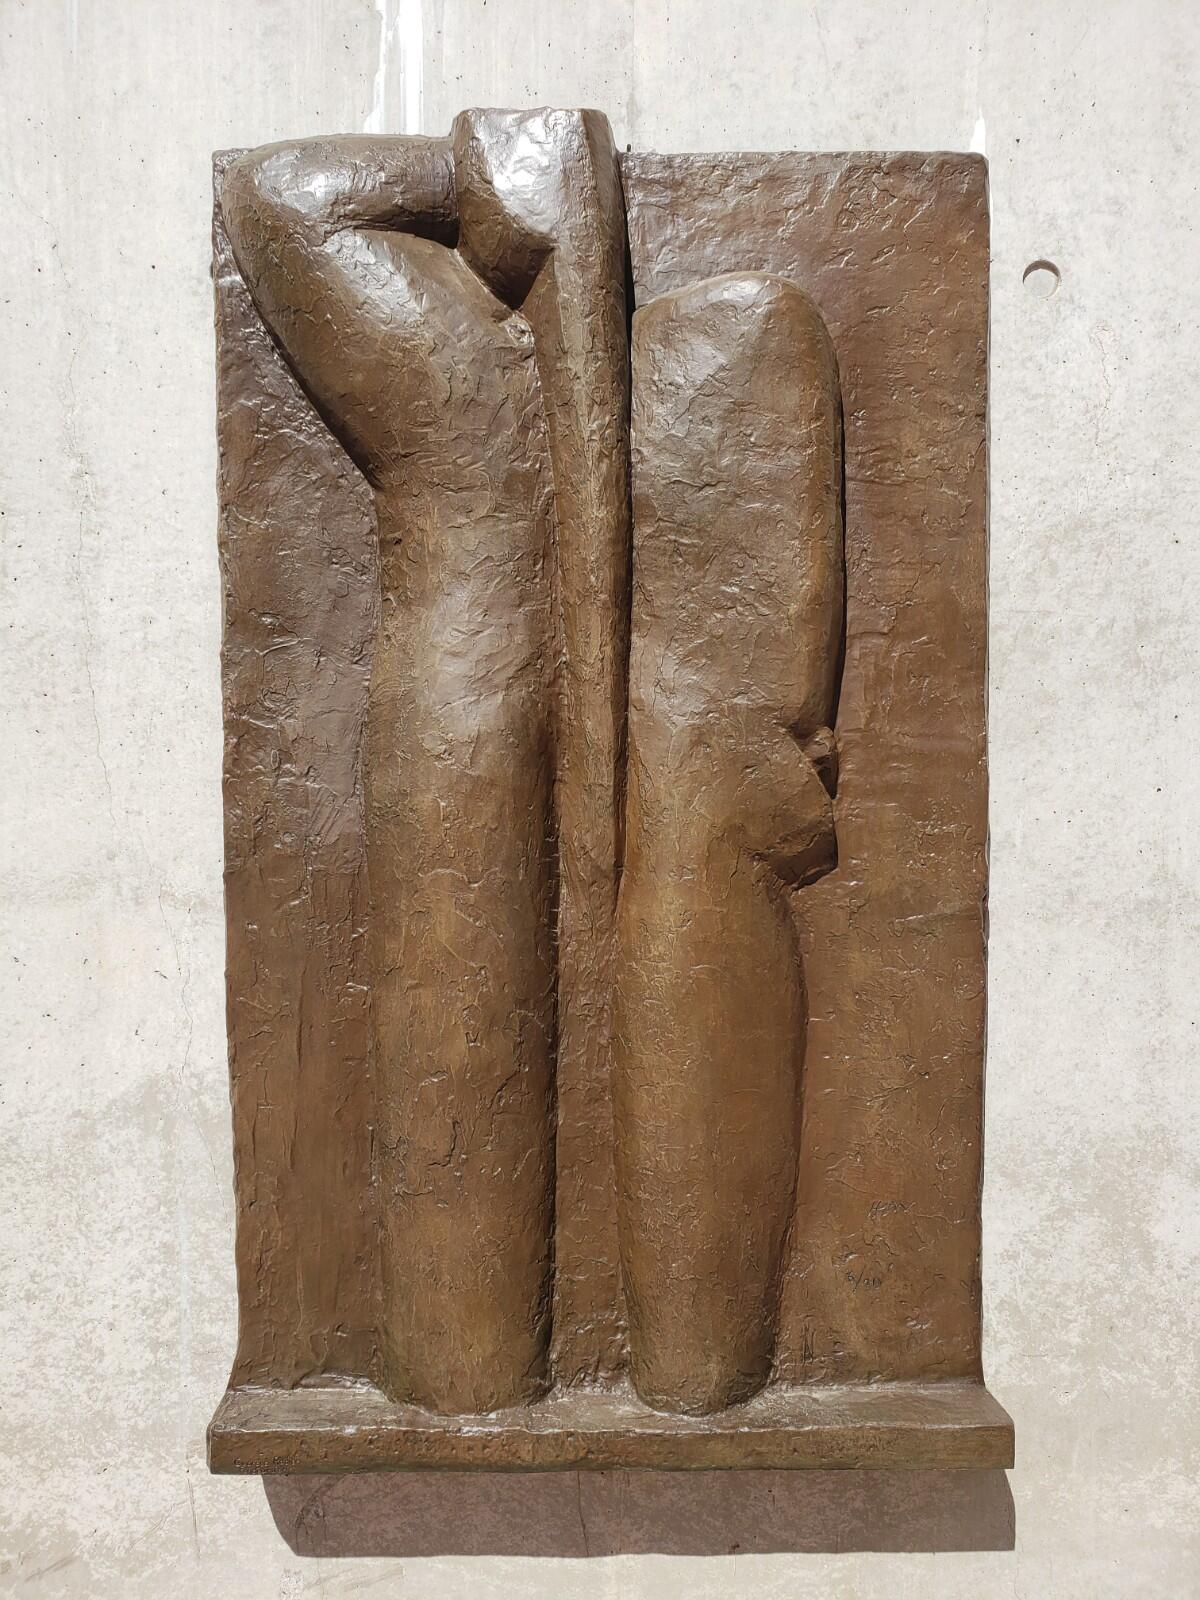 Henri Matisse, "Bas Relief IV," 1930, bronze.